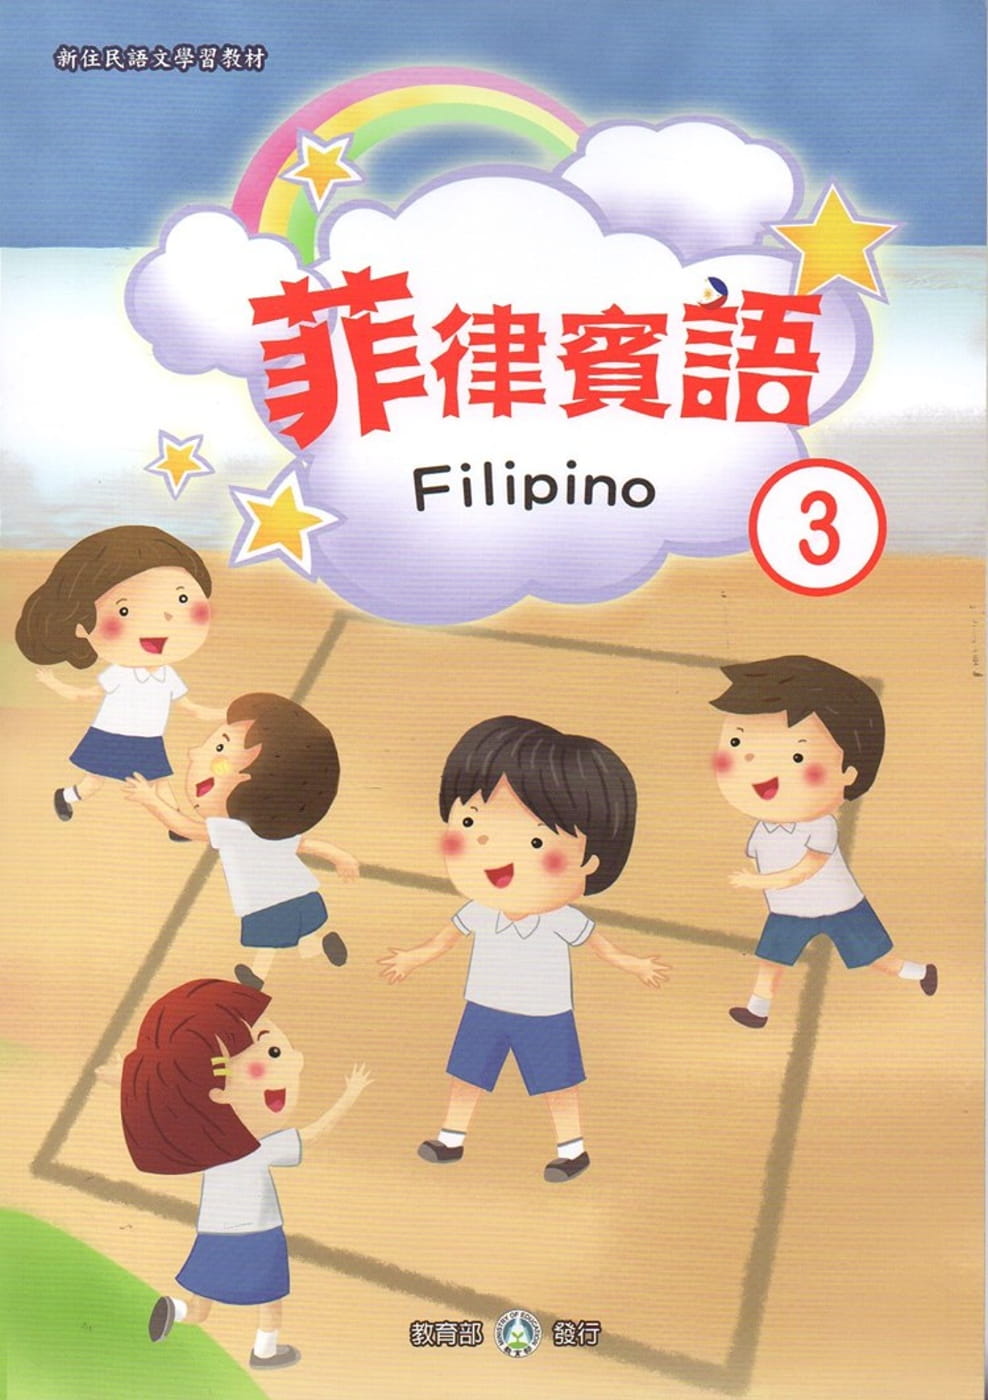 新住民語文學習教材菲律賓語第3冊